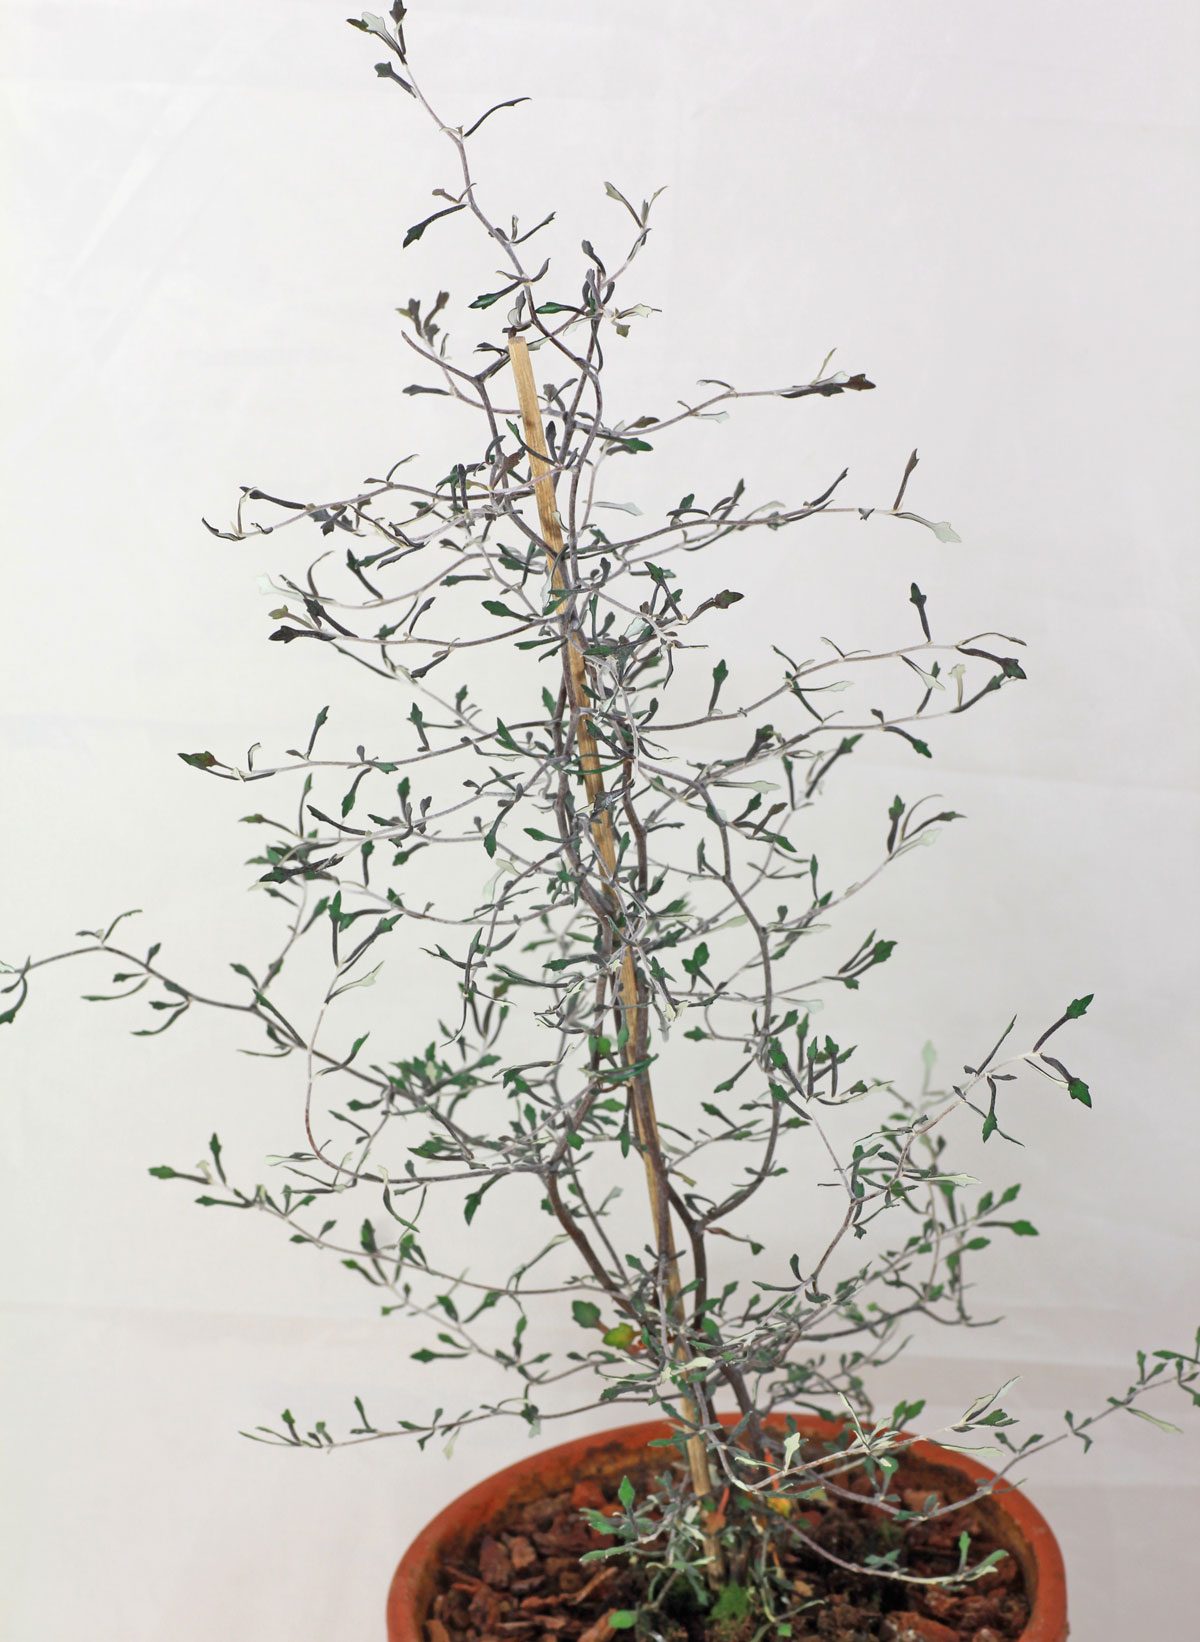 außergewöhnliche Pflanze aus Neuseeland Zickzackstrauch Corokia cotone 